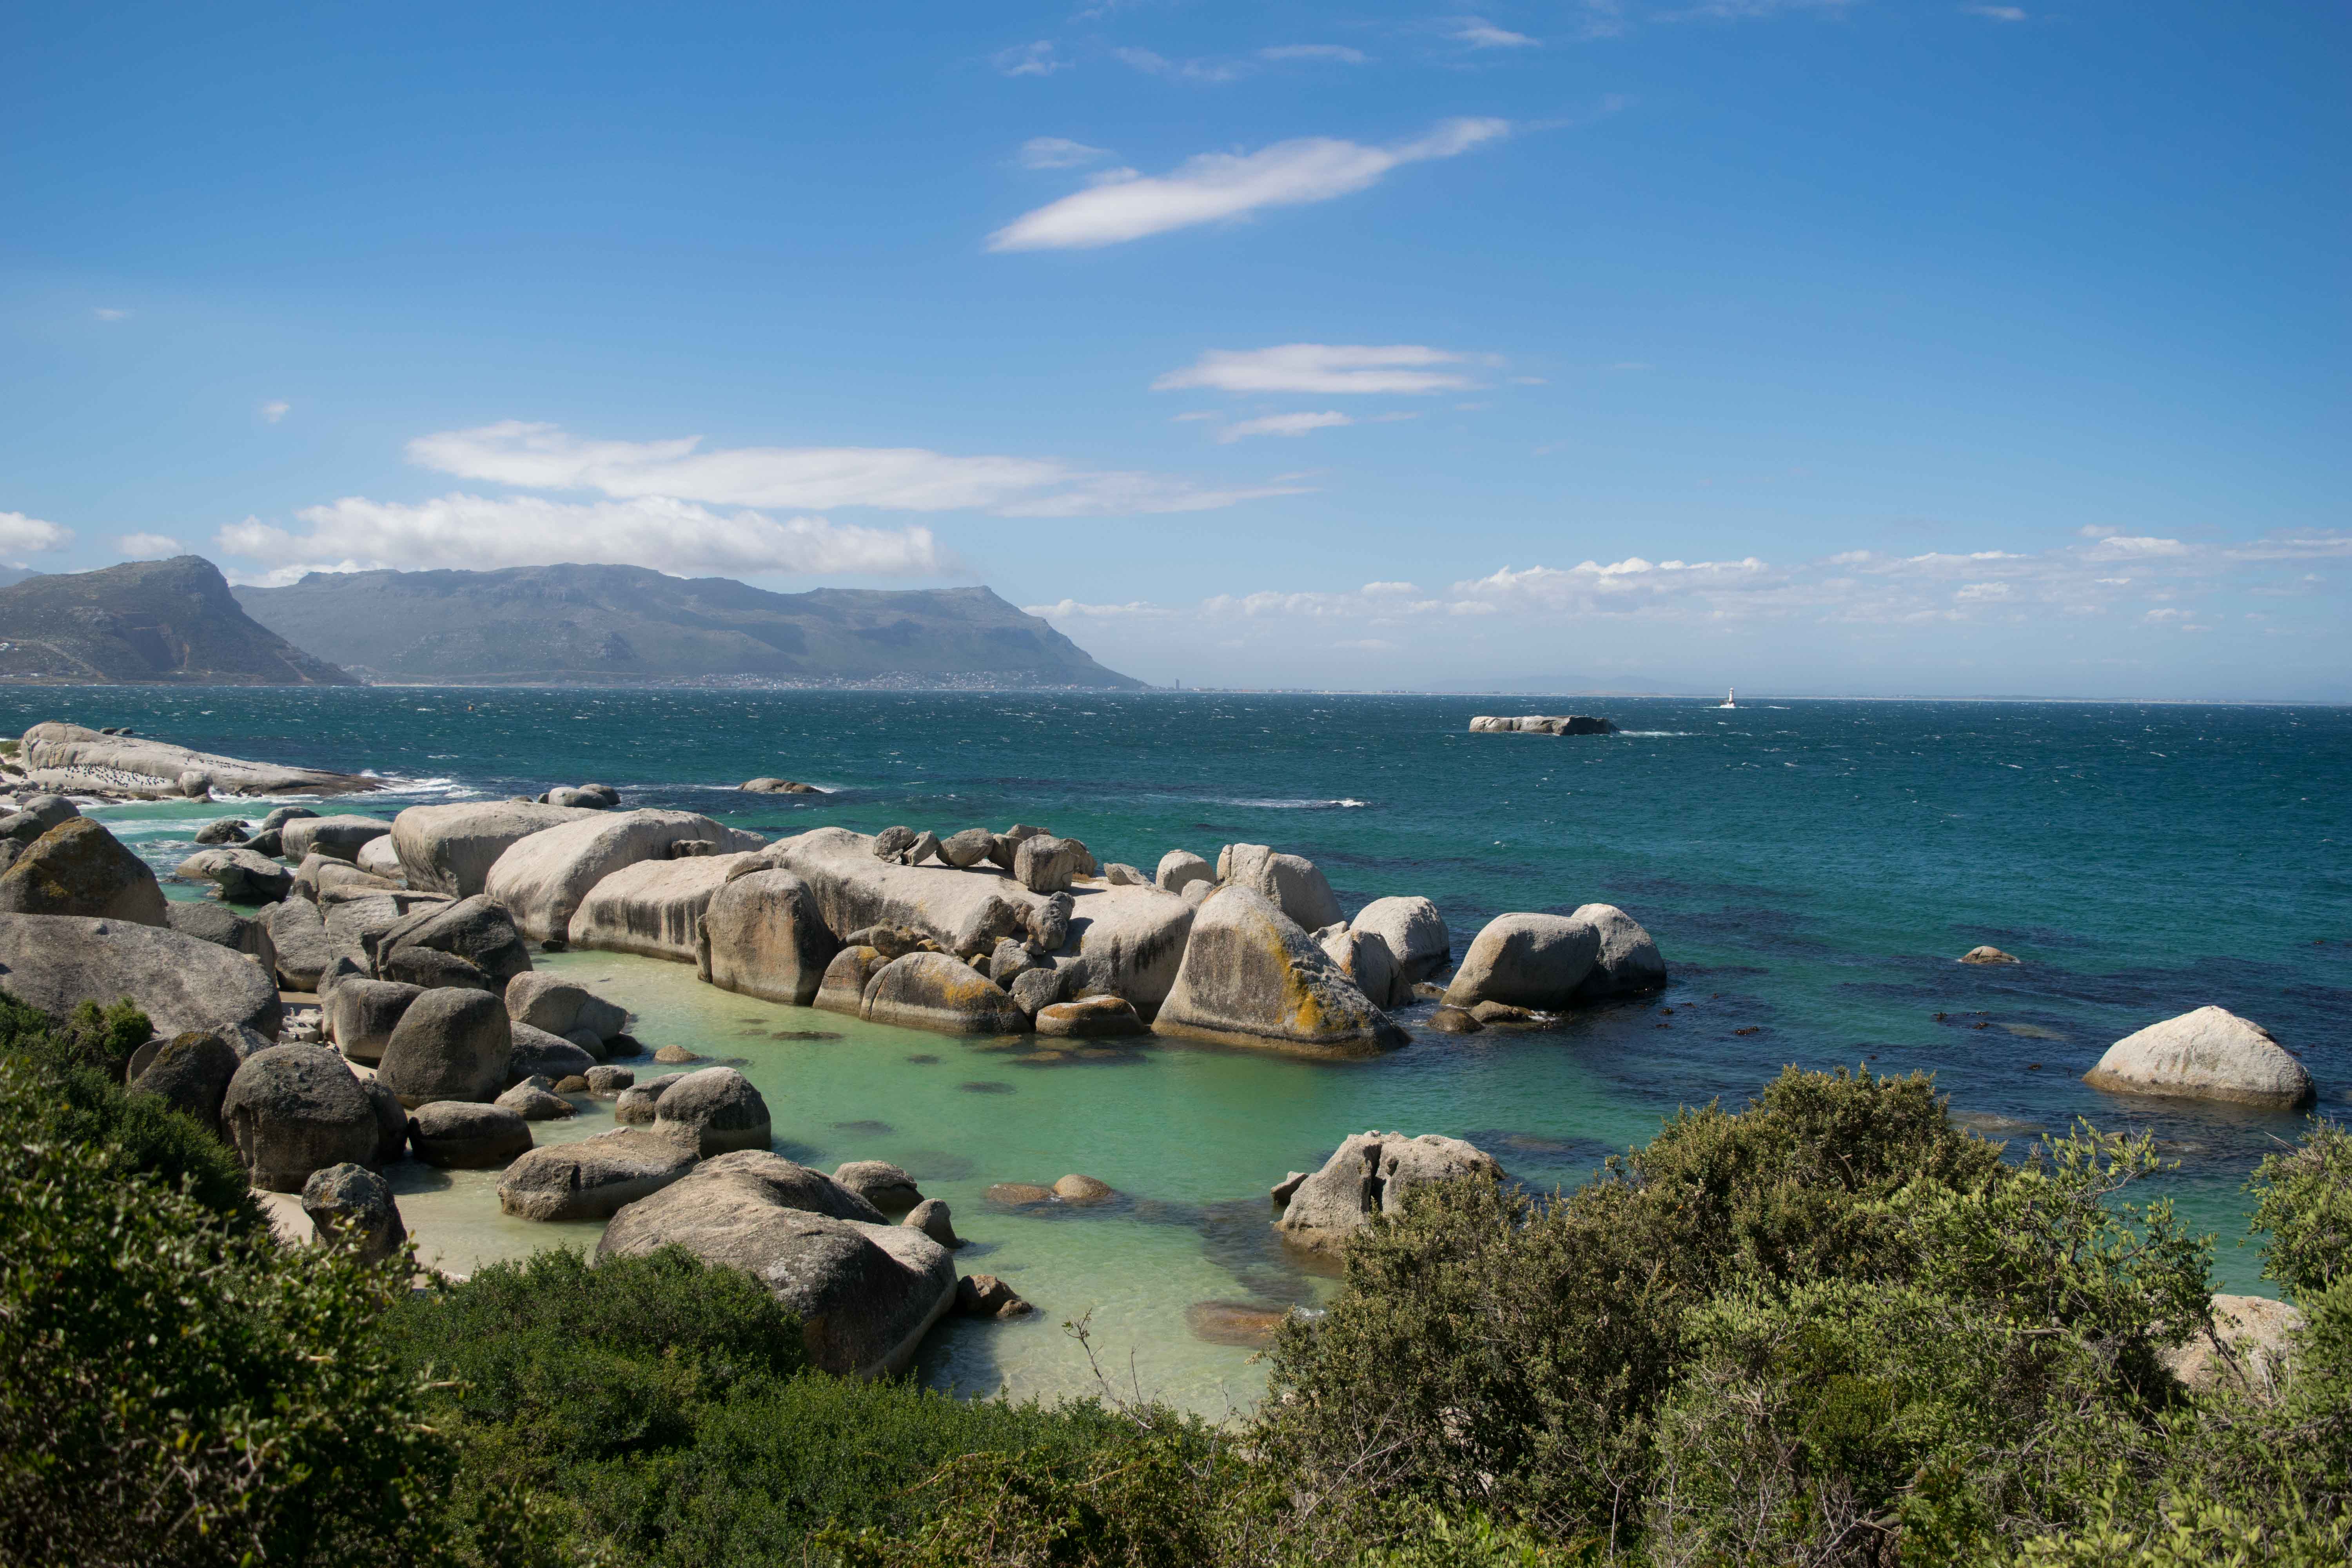 O que fazer em Cape Town: passeio de barco, safari em Cape Town, mercados, praias...